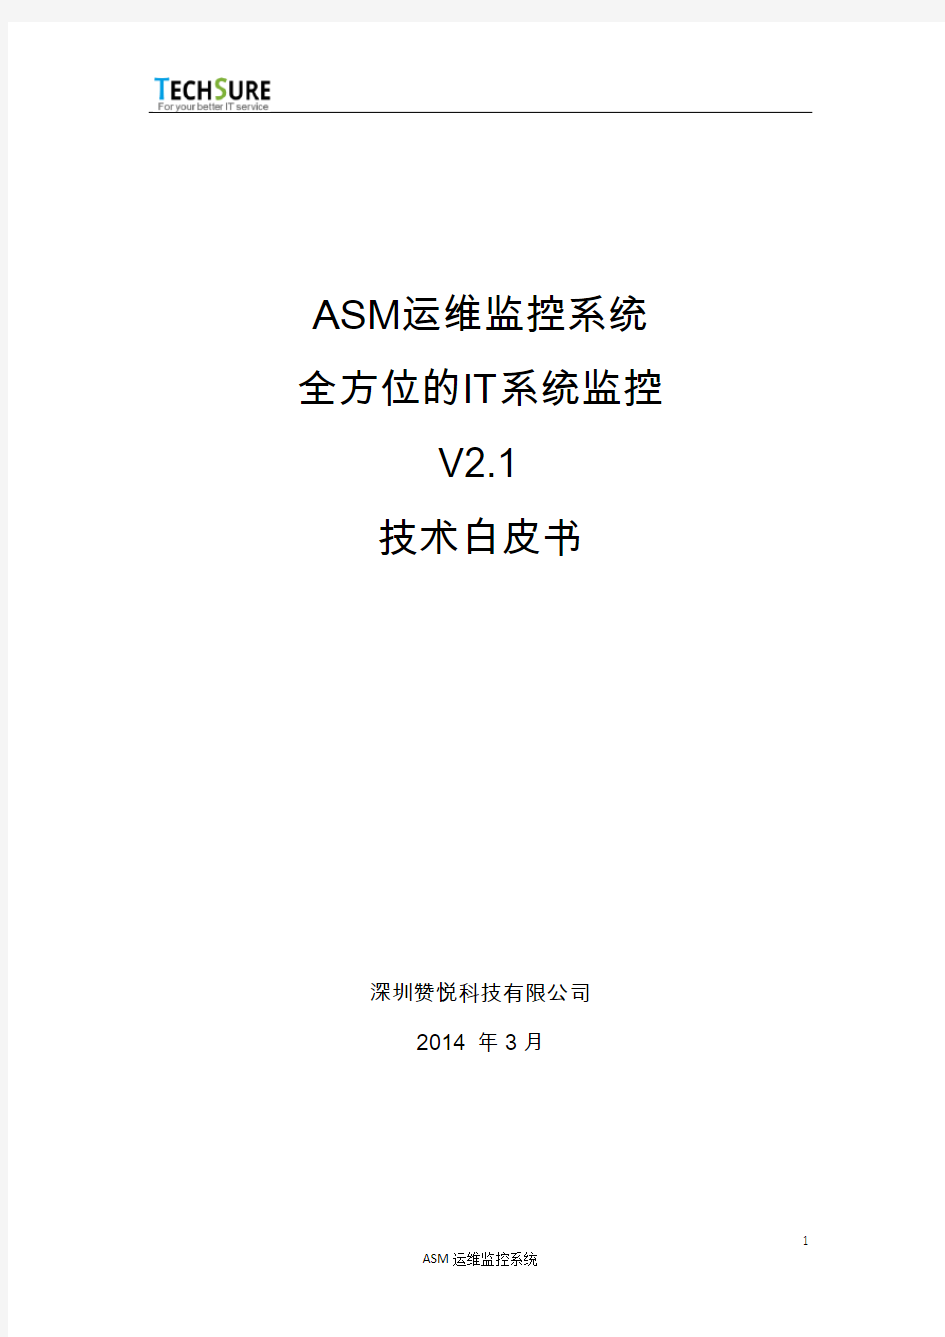 ASM运维监控系统 全方位的IT系统监控